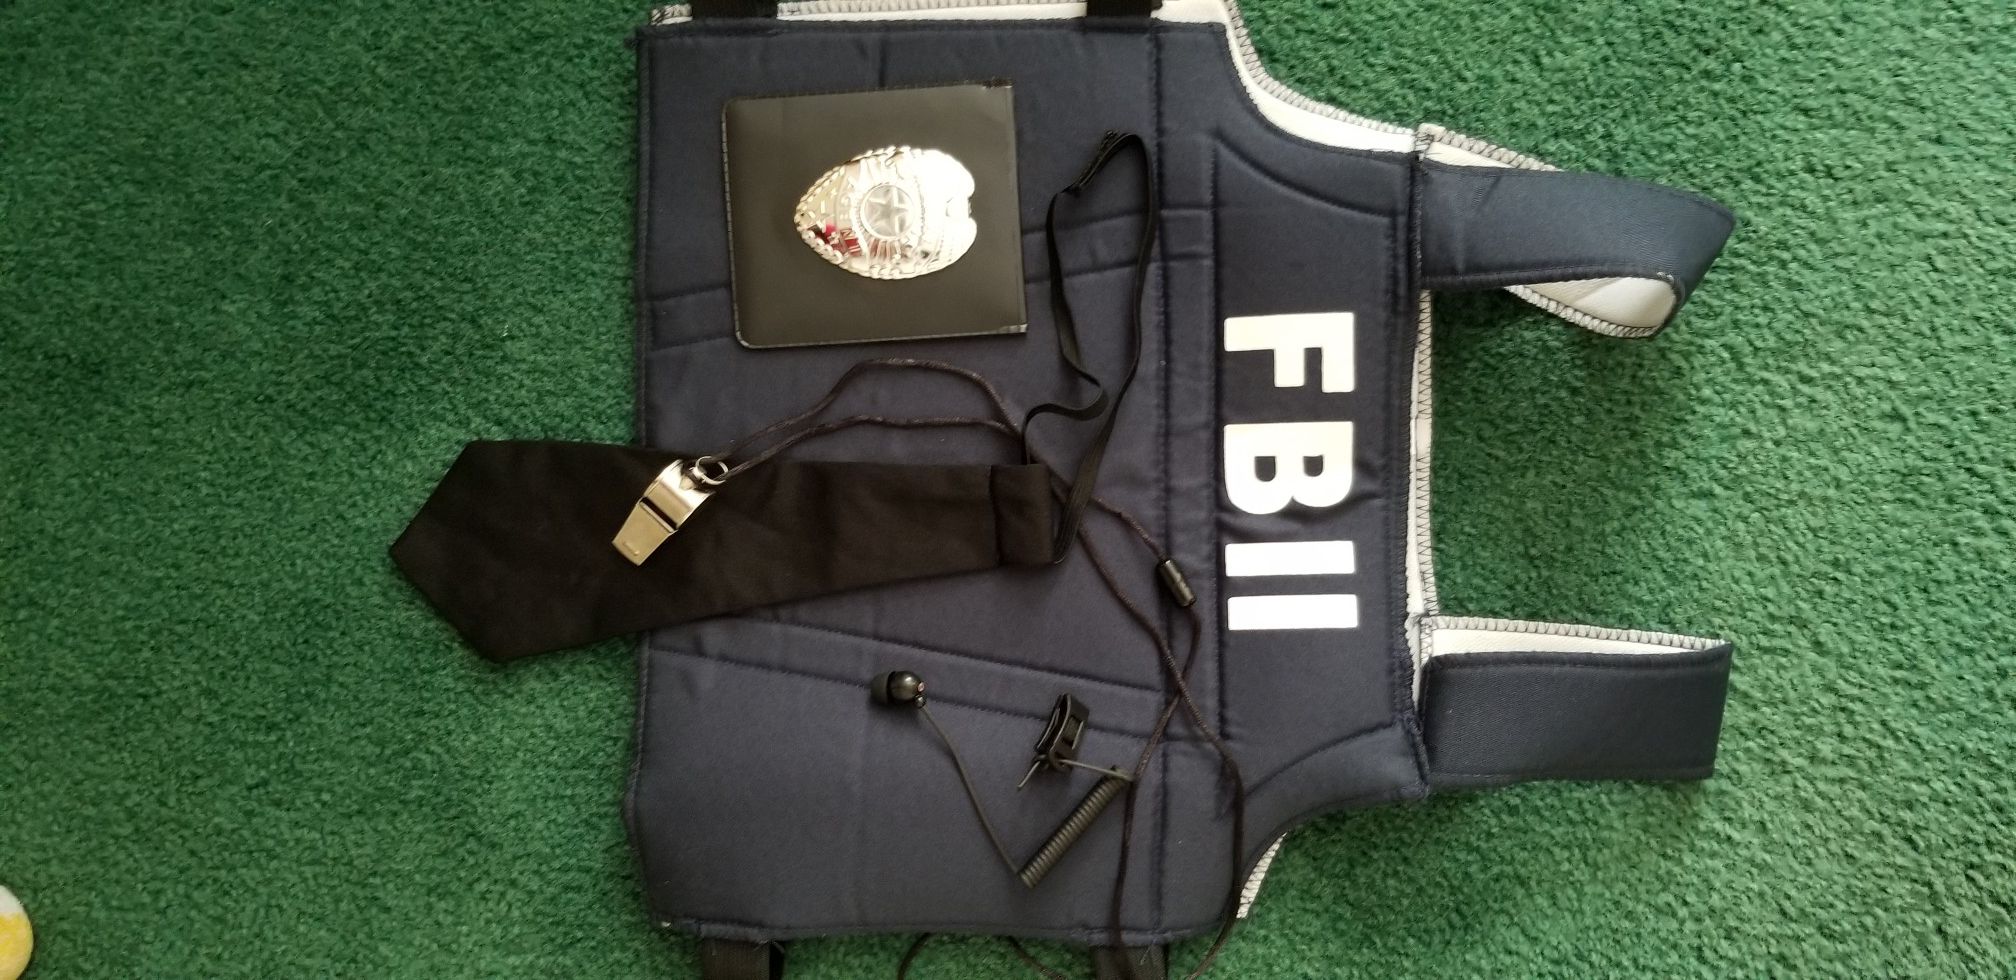 Boys FBI Costume Excellent Condition Medium 4-6